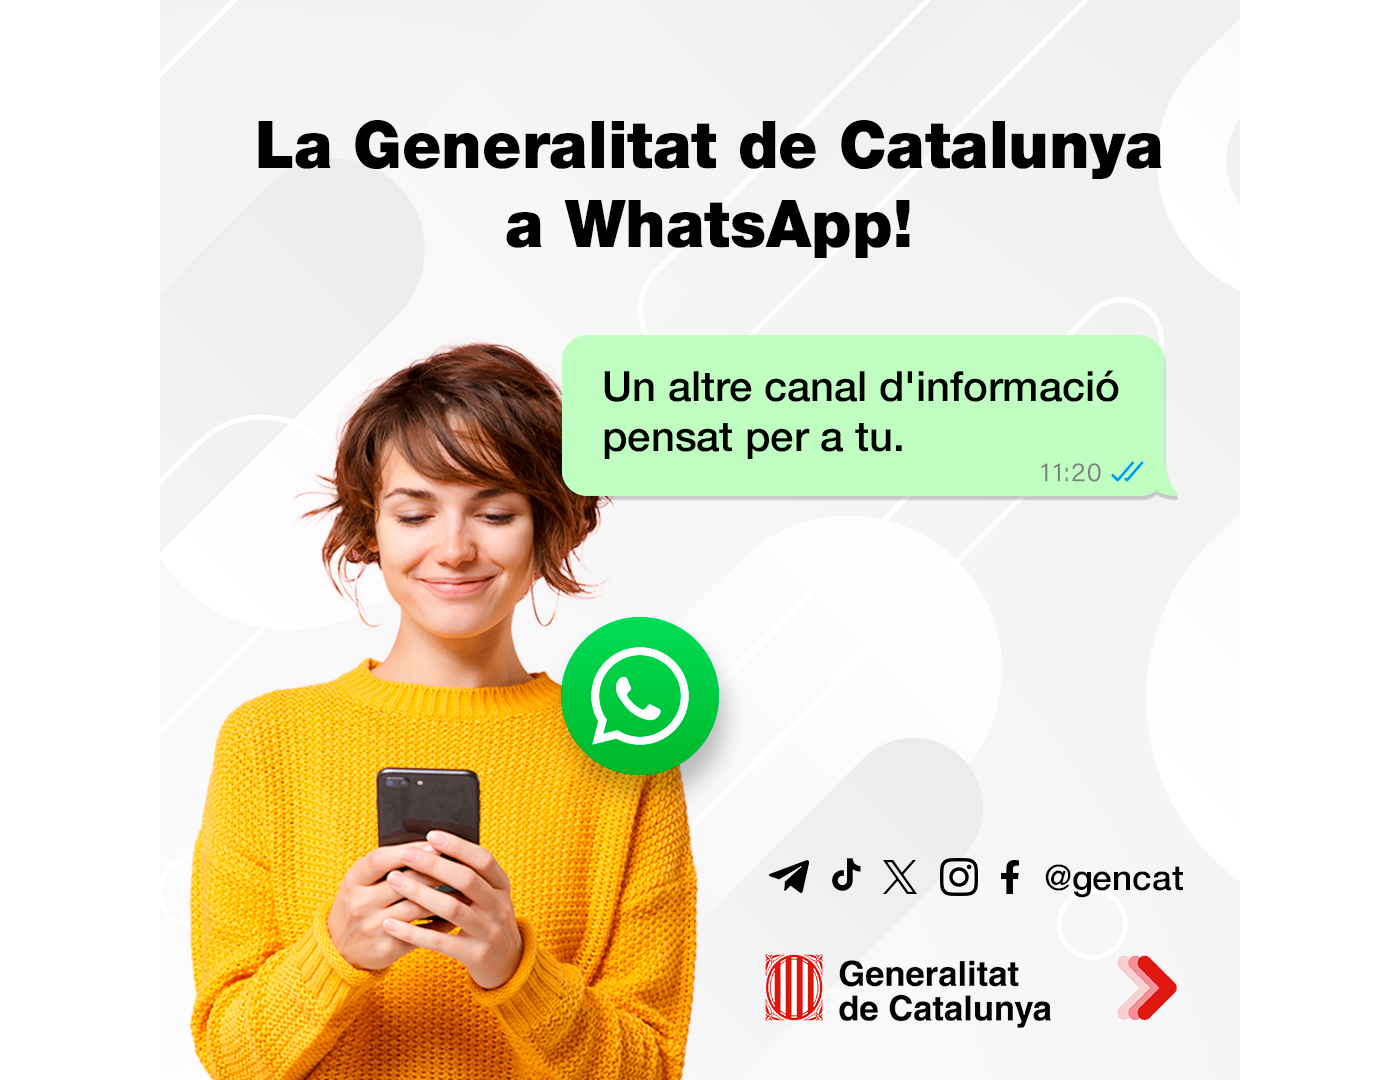 La Generalitat se apunta a WhatsApp